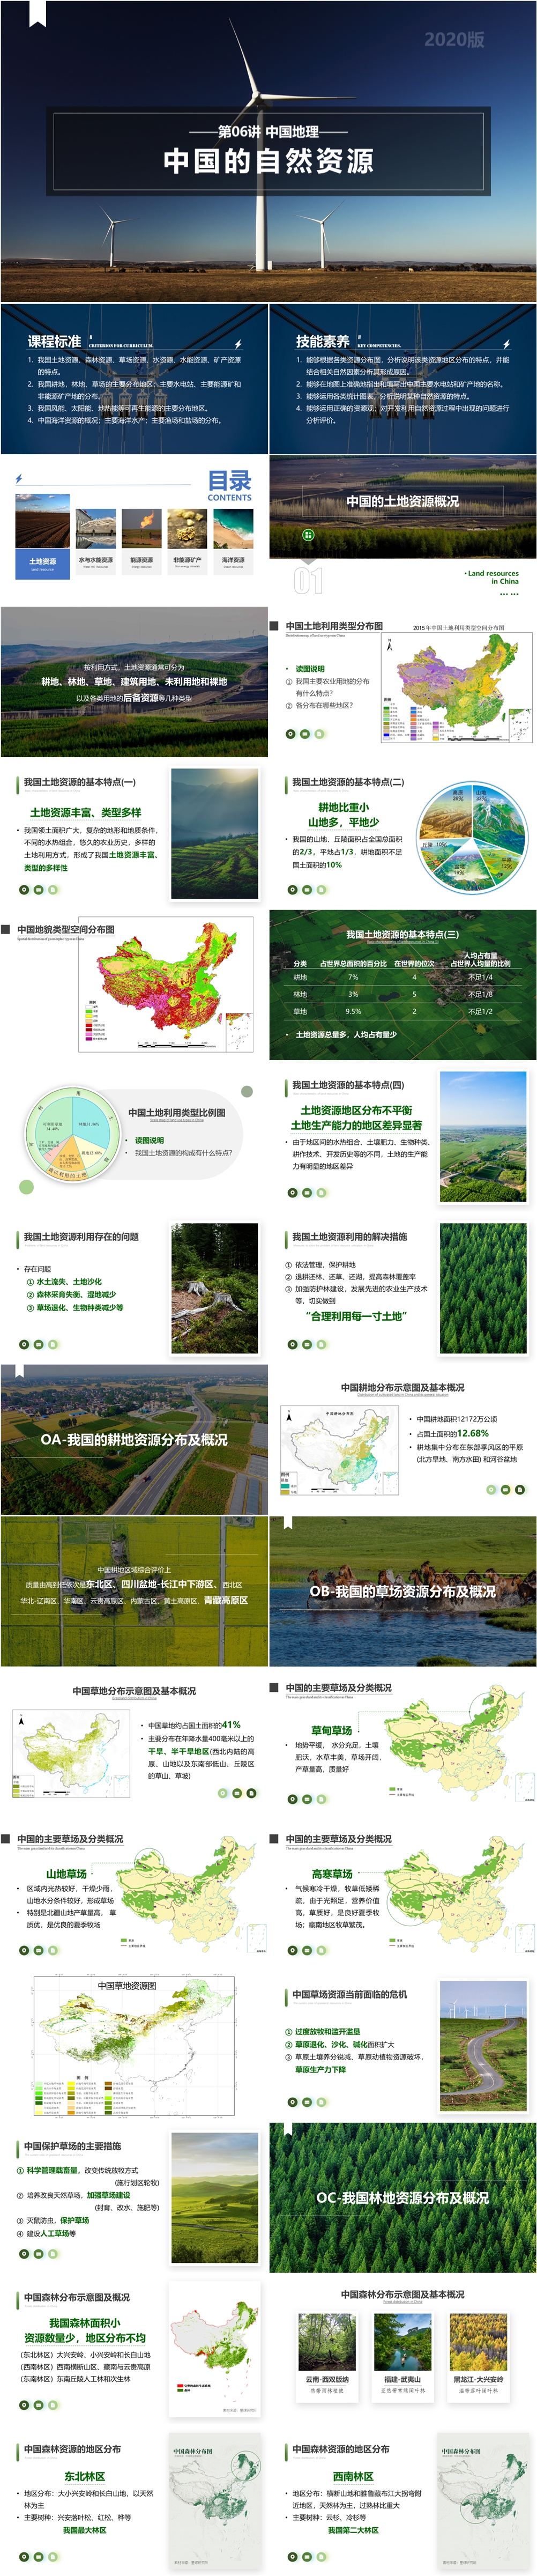 第06讲 中国的自然资源 [2020版]-01.jpg